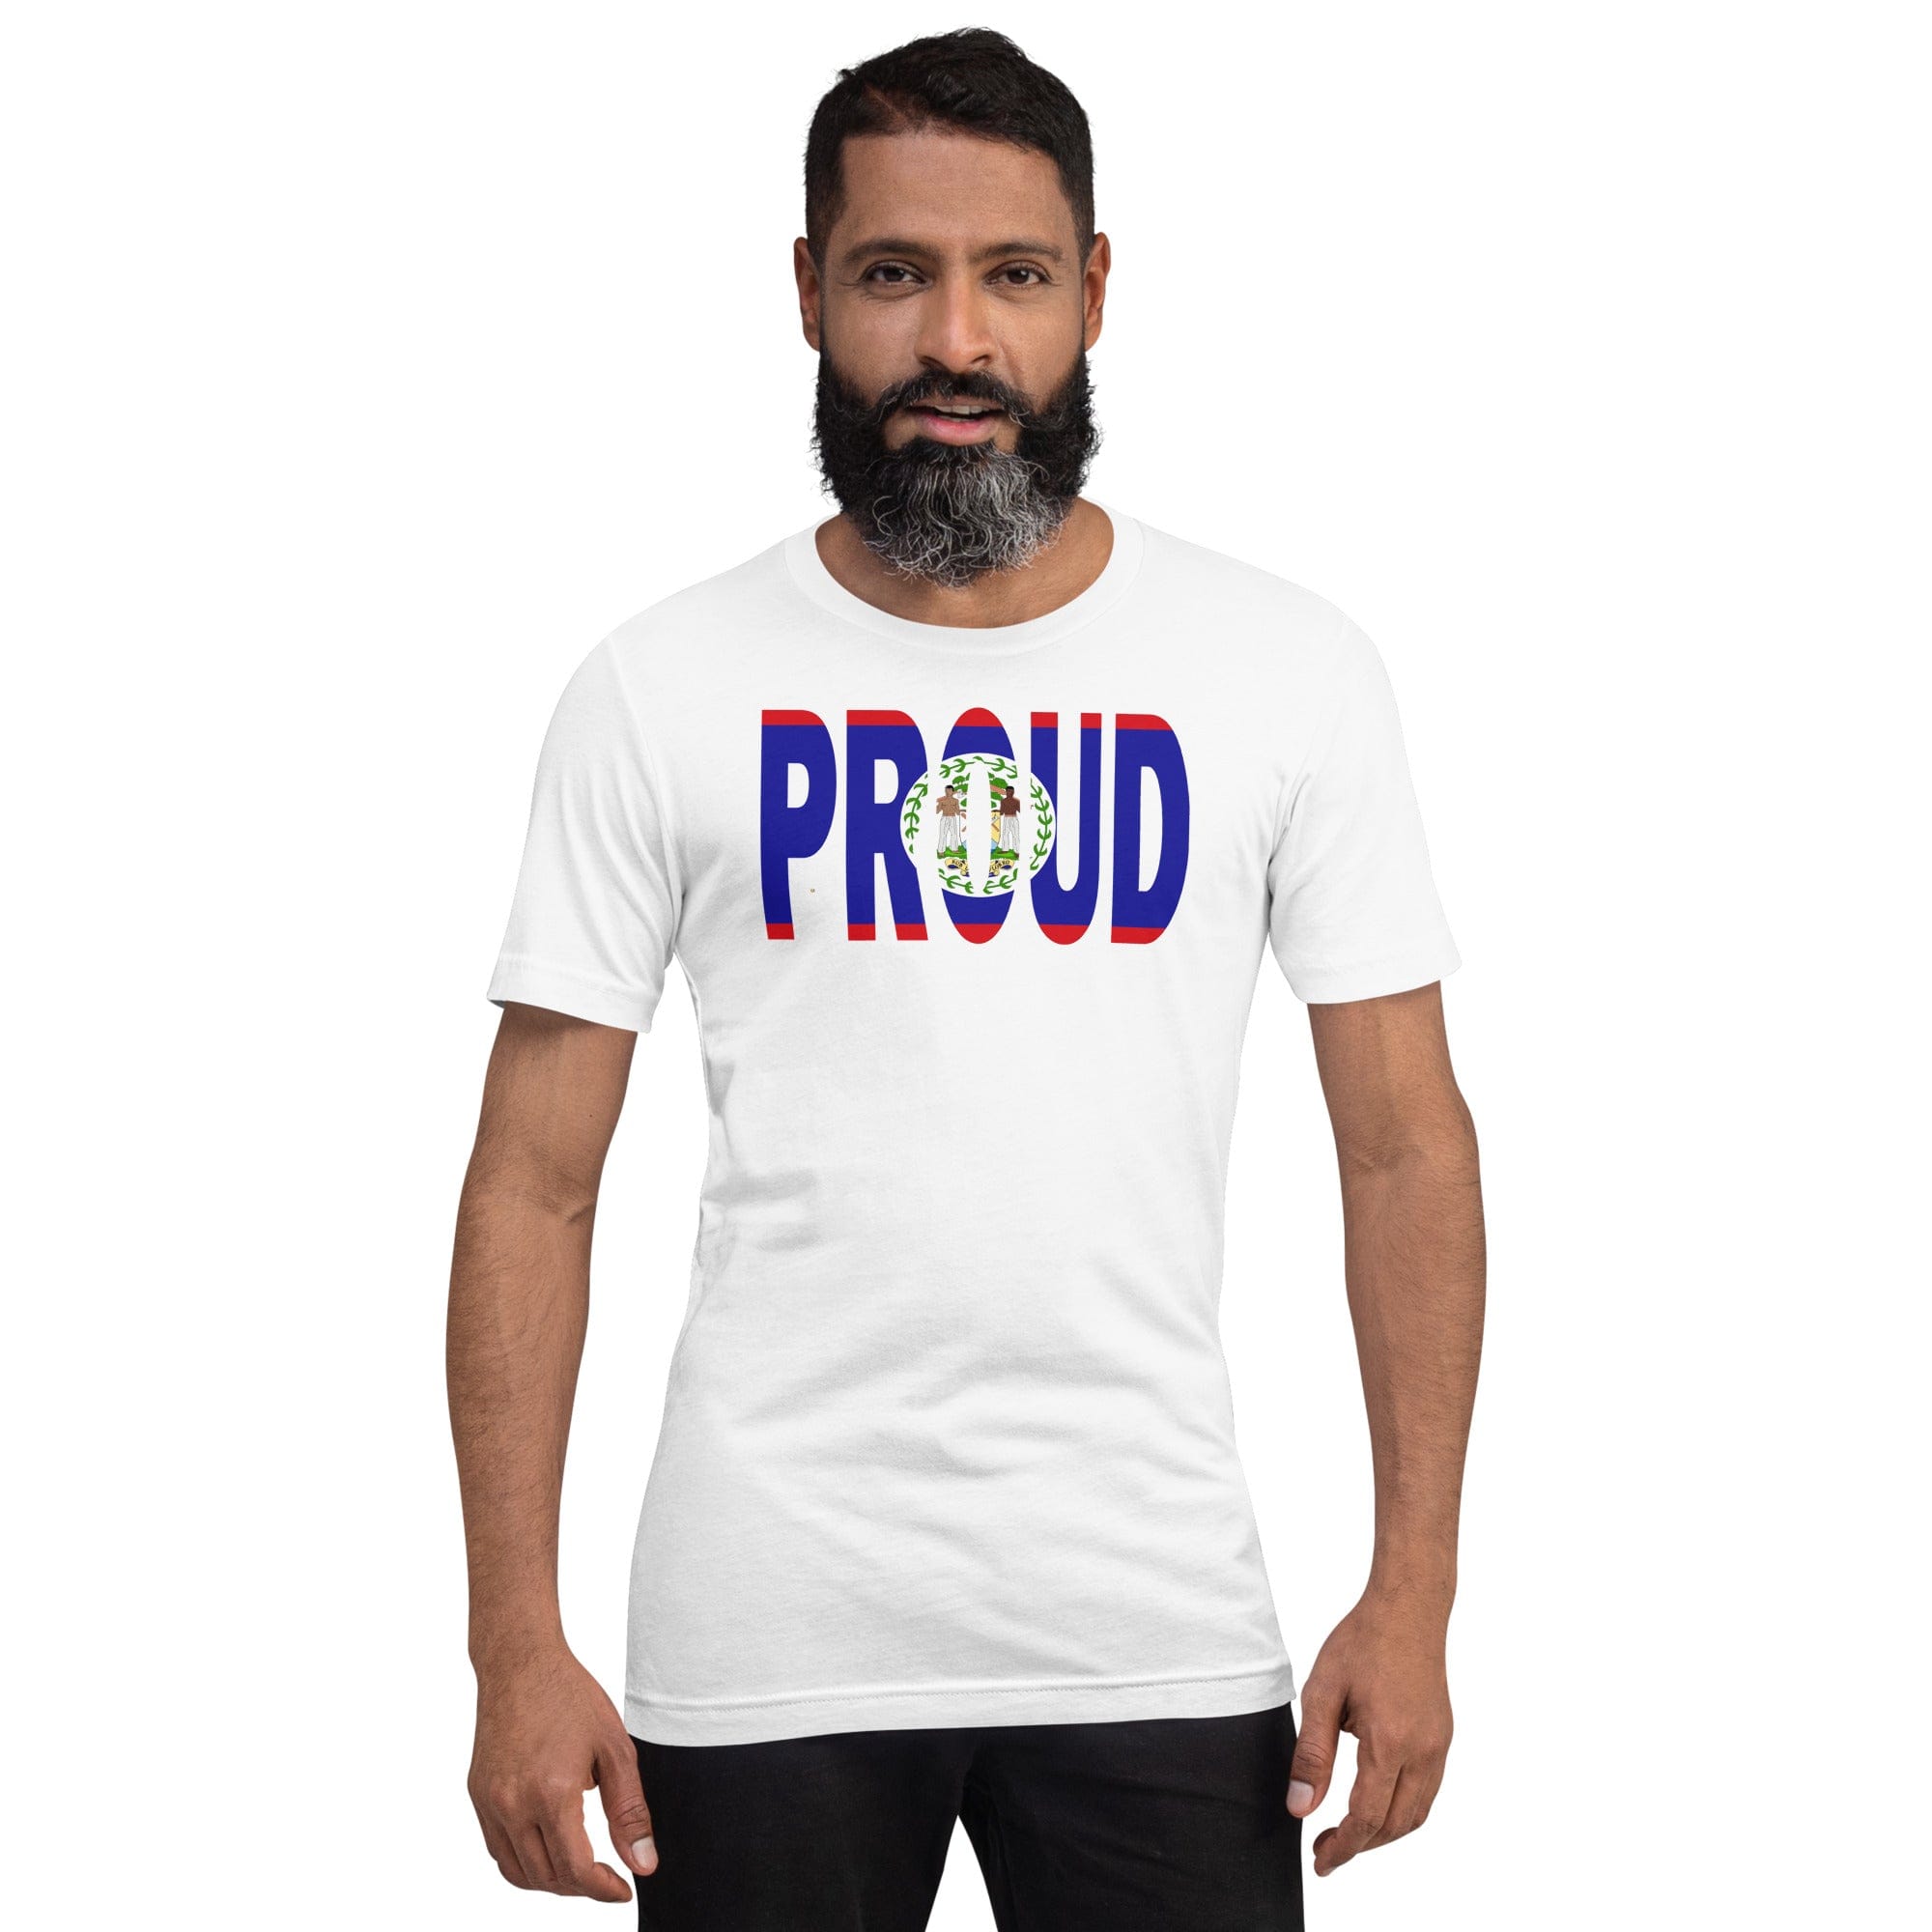 Proud Belize Flag white color t-shirt on a black man.